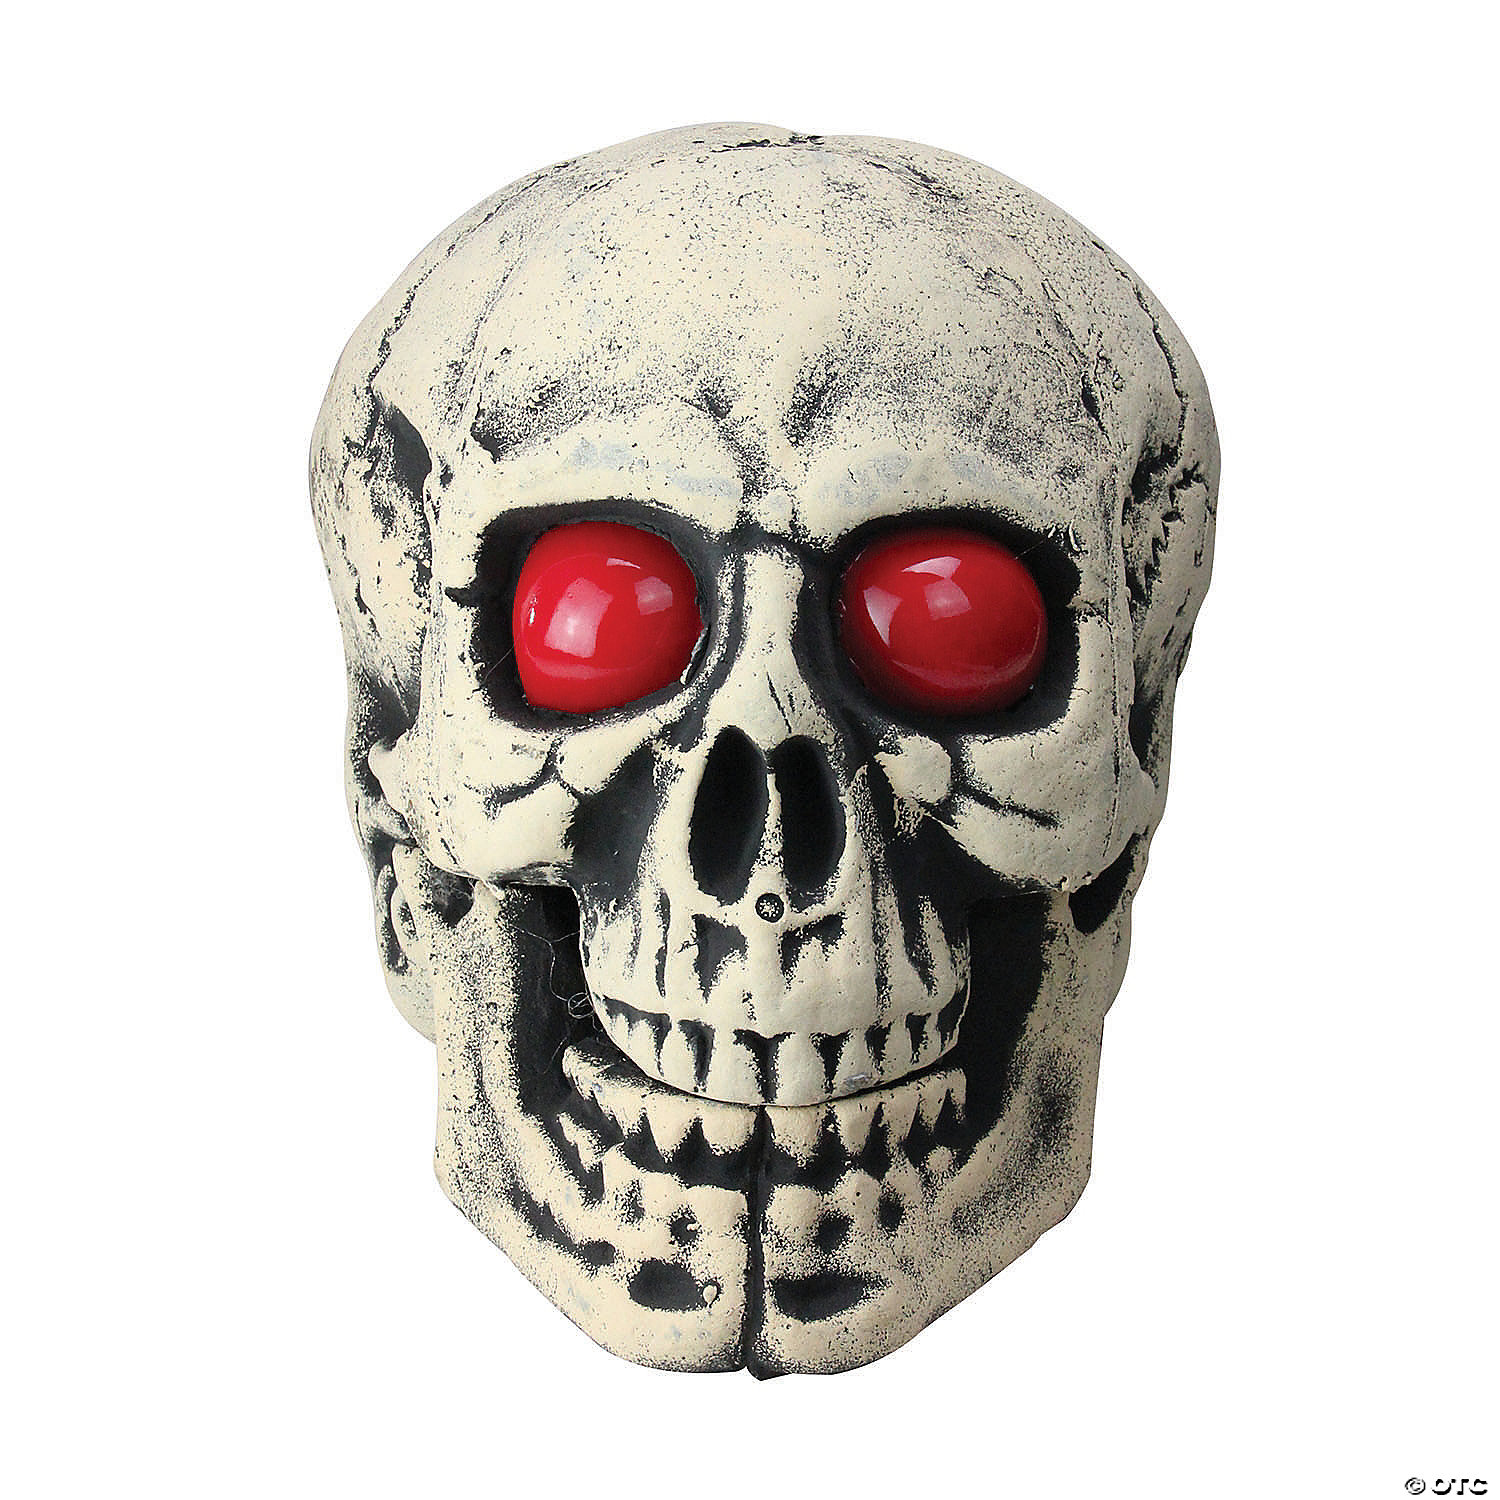 Lifelike Skull Day of the Dead Ornament Skeleton Head Home Decor Craft Gift